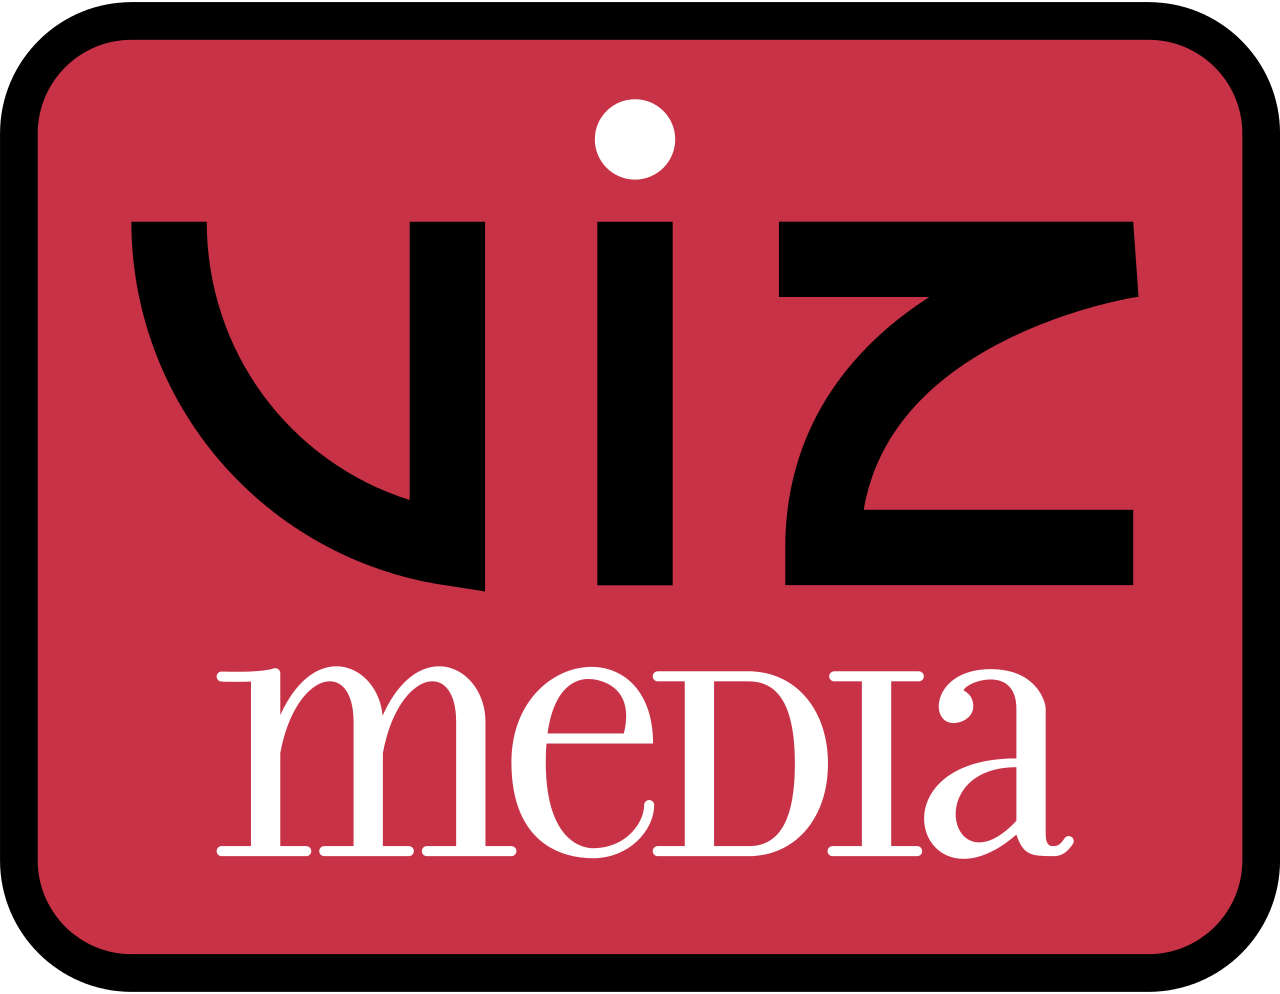 VIZ Media, LLC